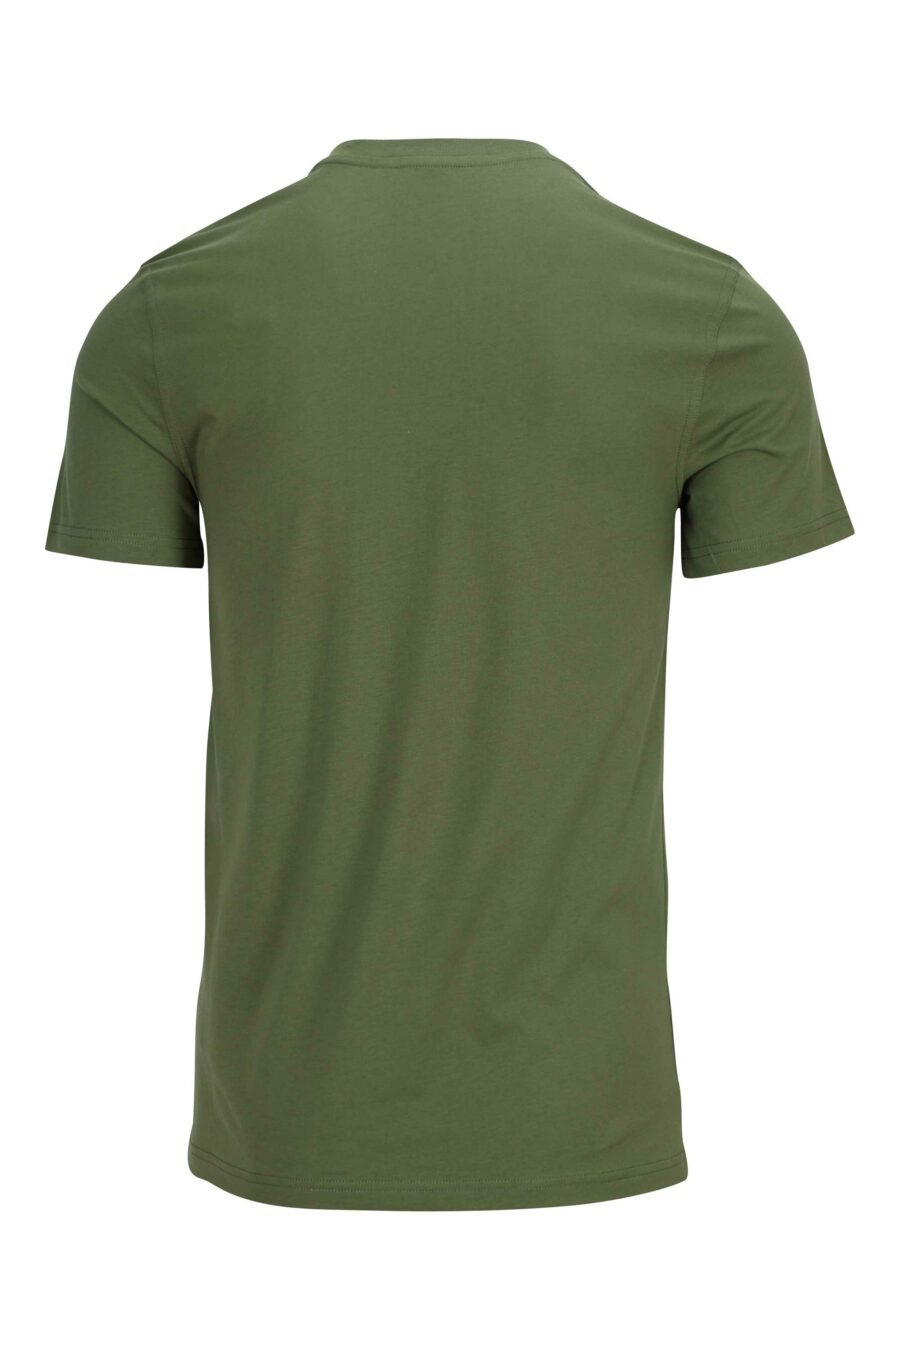 Camiseta verde militar de algodón ecológico con maxilogo "teddy" - 889316854527 1